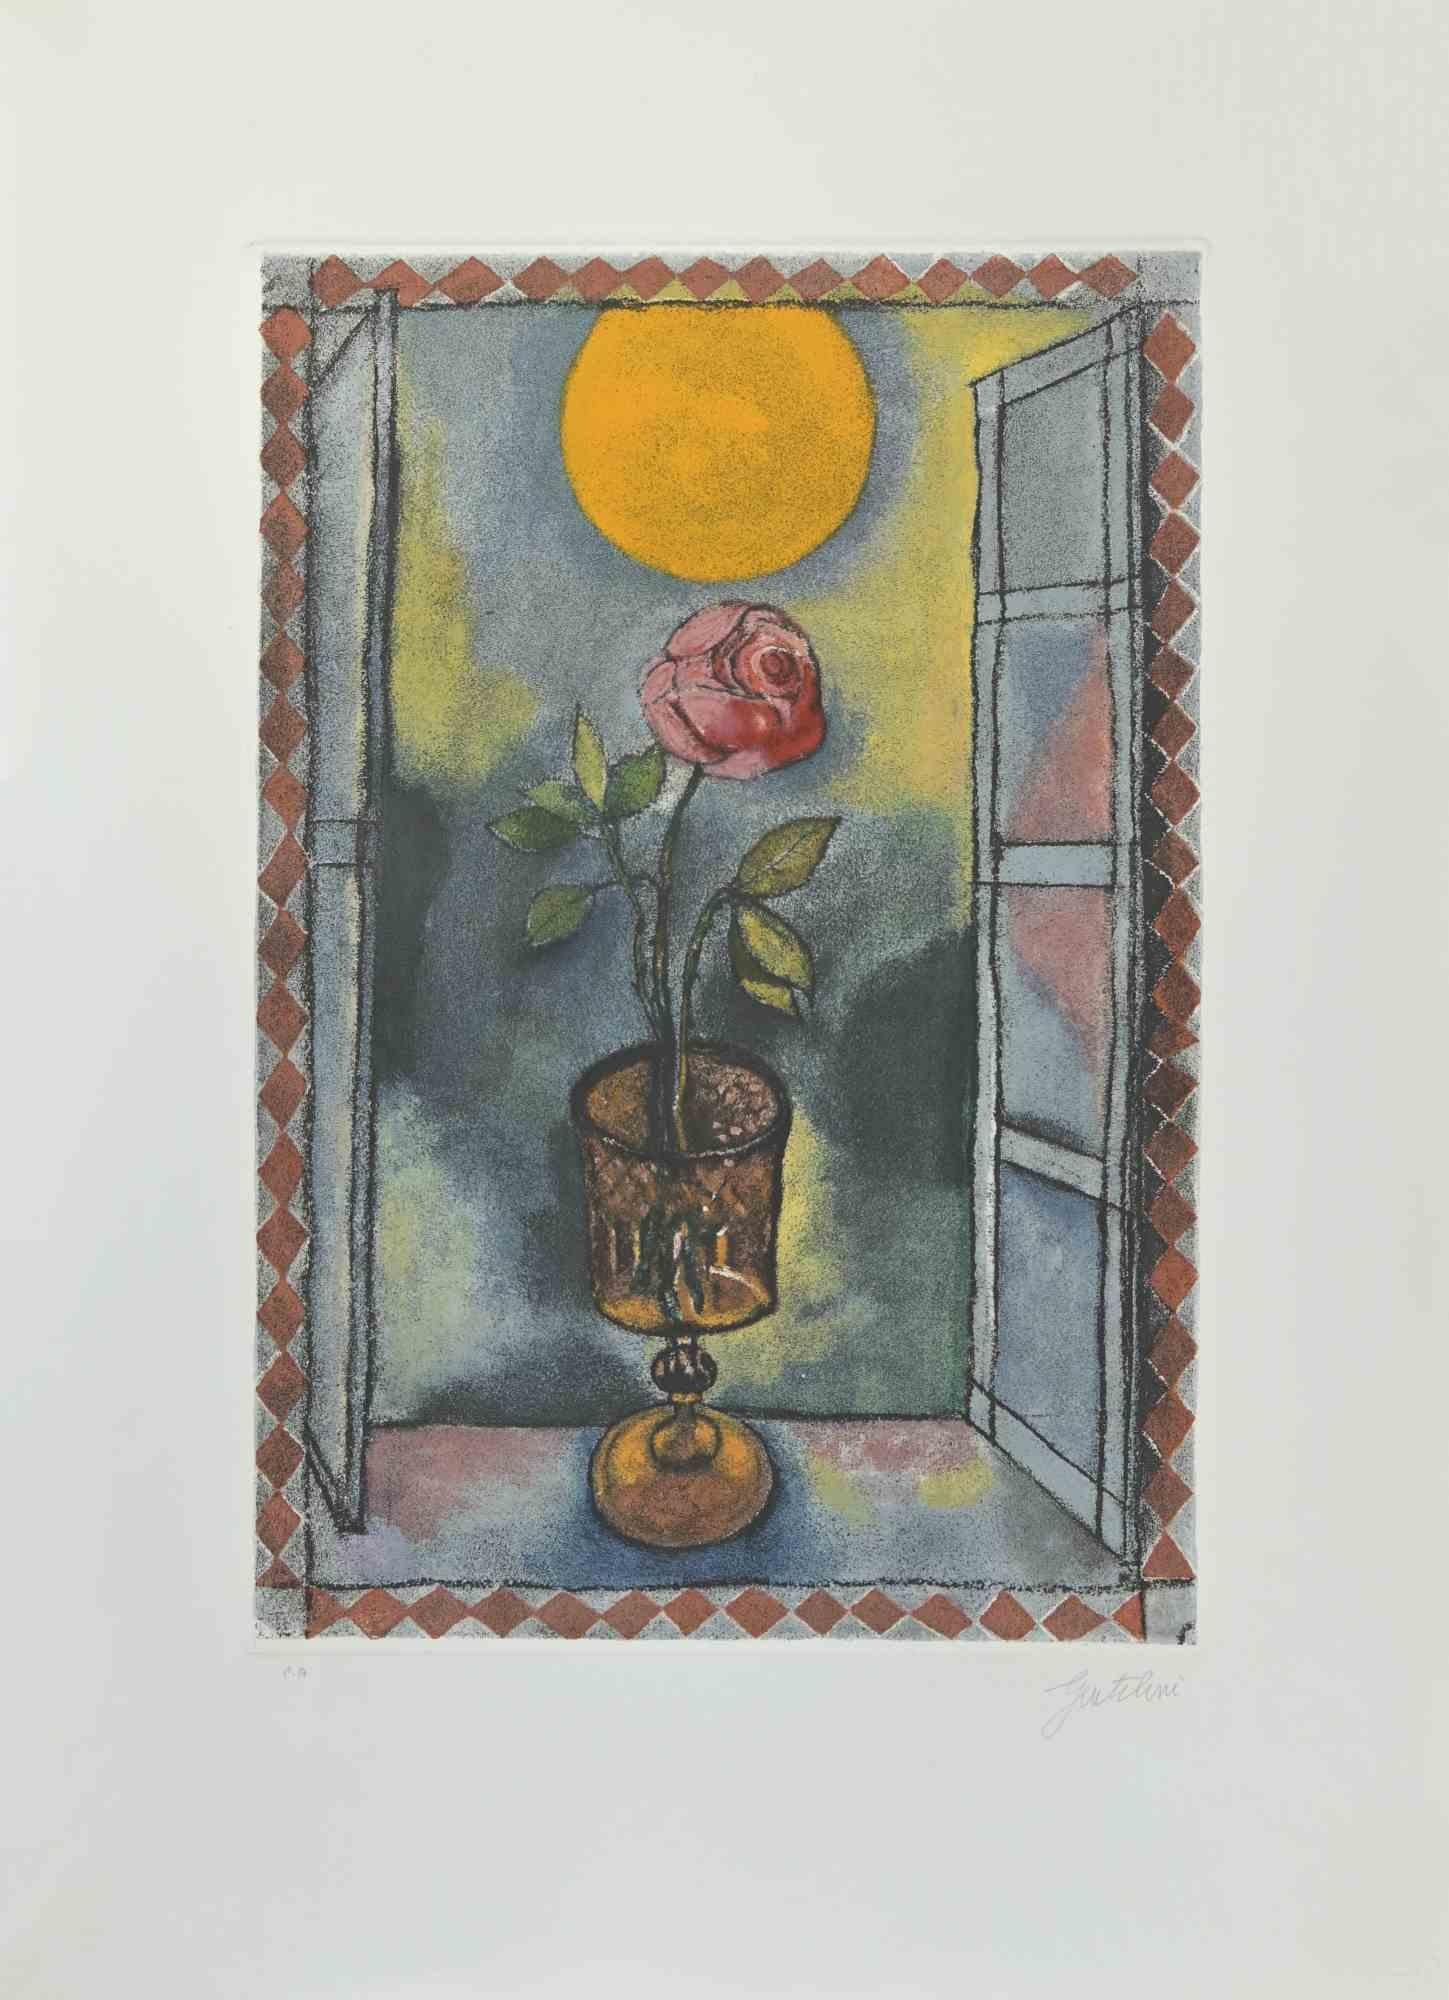 Die Sonne ist eine Radierung und Aquatinta von Franco Gentilini (italienischer Maler, 1909-1981) aus den 1970er Jahren.

Aus der Serie "Die Tarots" Trockenstempel von Il Cigno Stamperia d'Arte. 

Handsigniert mit Bleistift auf der unteren